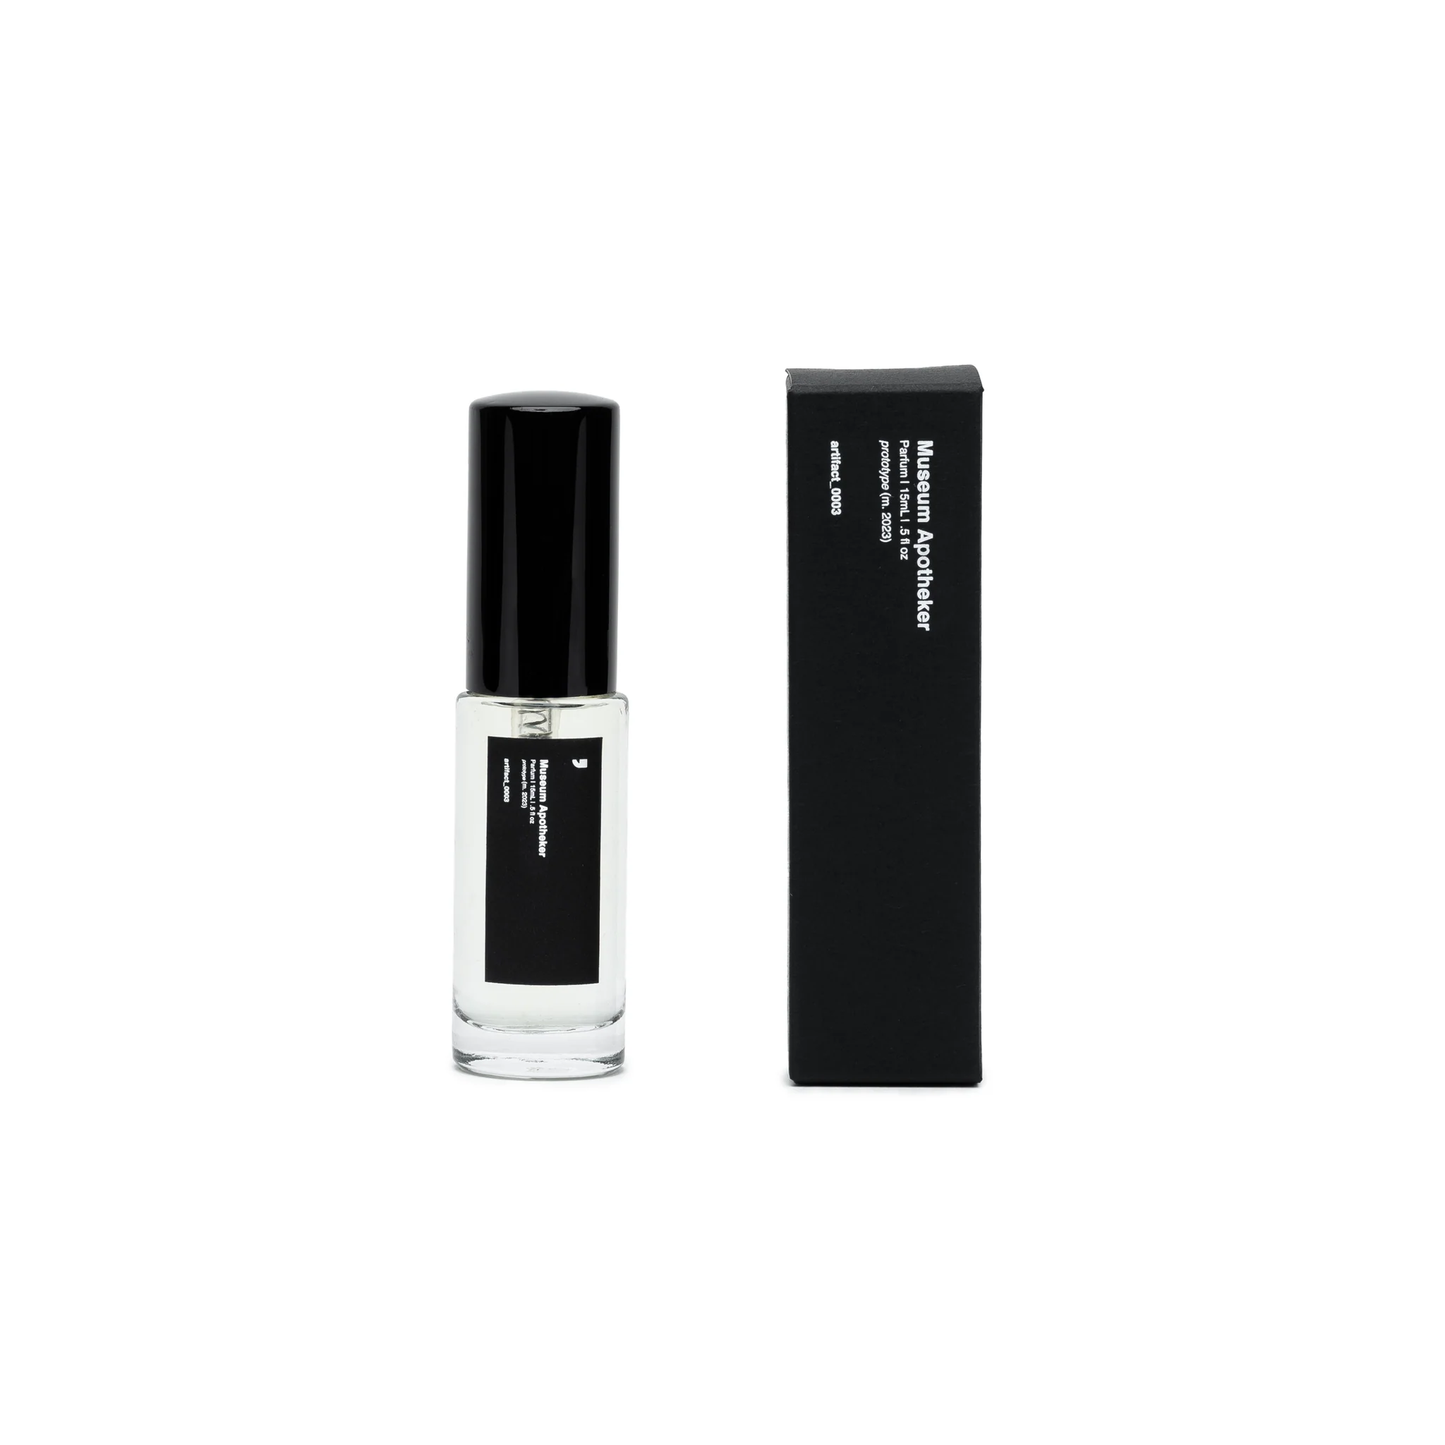 Artifact_003 Parfum 15mL